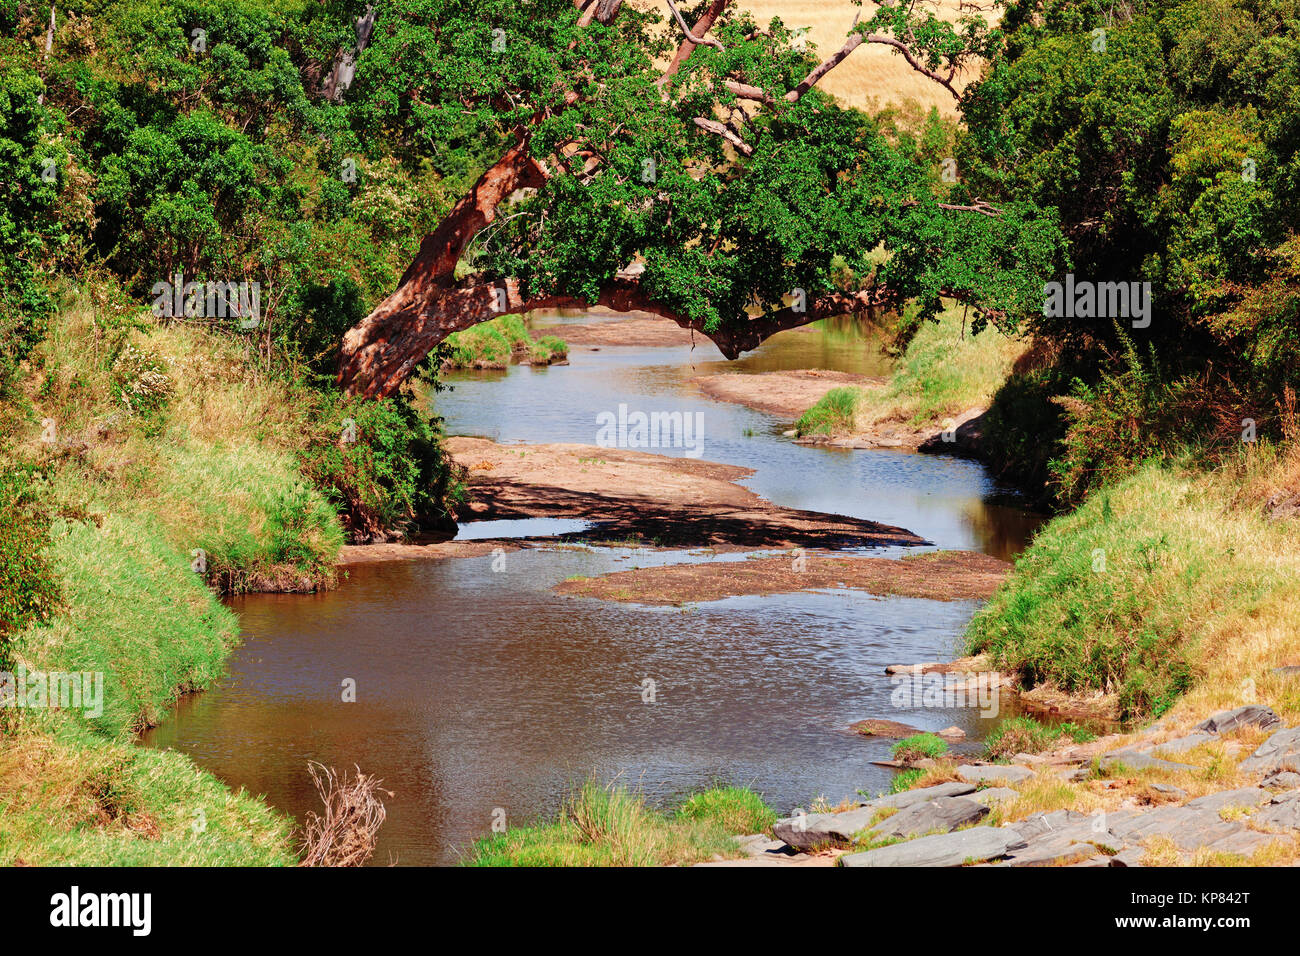 River in Masai Mara,River in Masai Mara,River in Masai Mara,River in Masai Mara,River in Masai Mara,River in Masai Mara,River in Masai Mara,River in Masai Mara Stock Photo